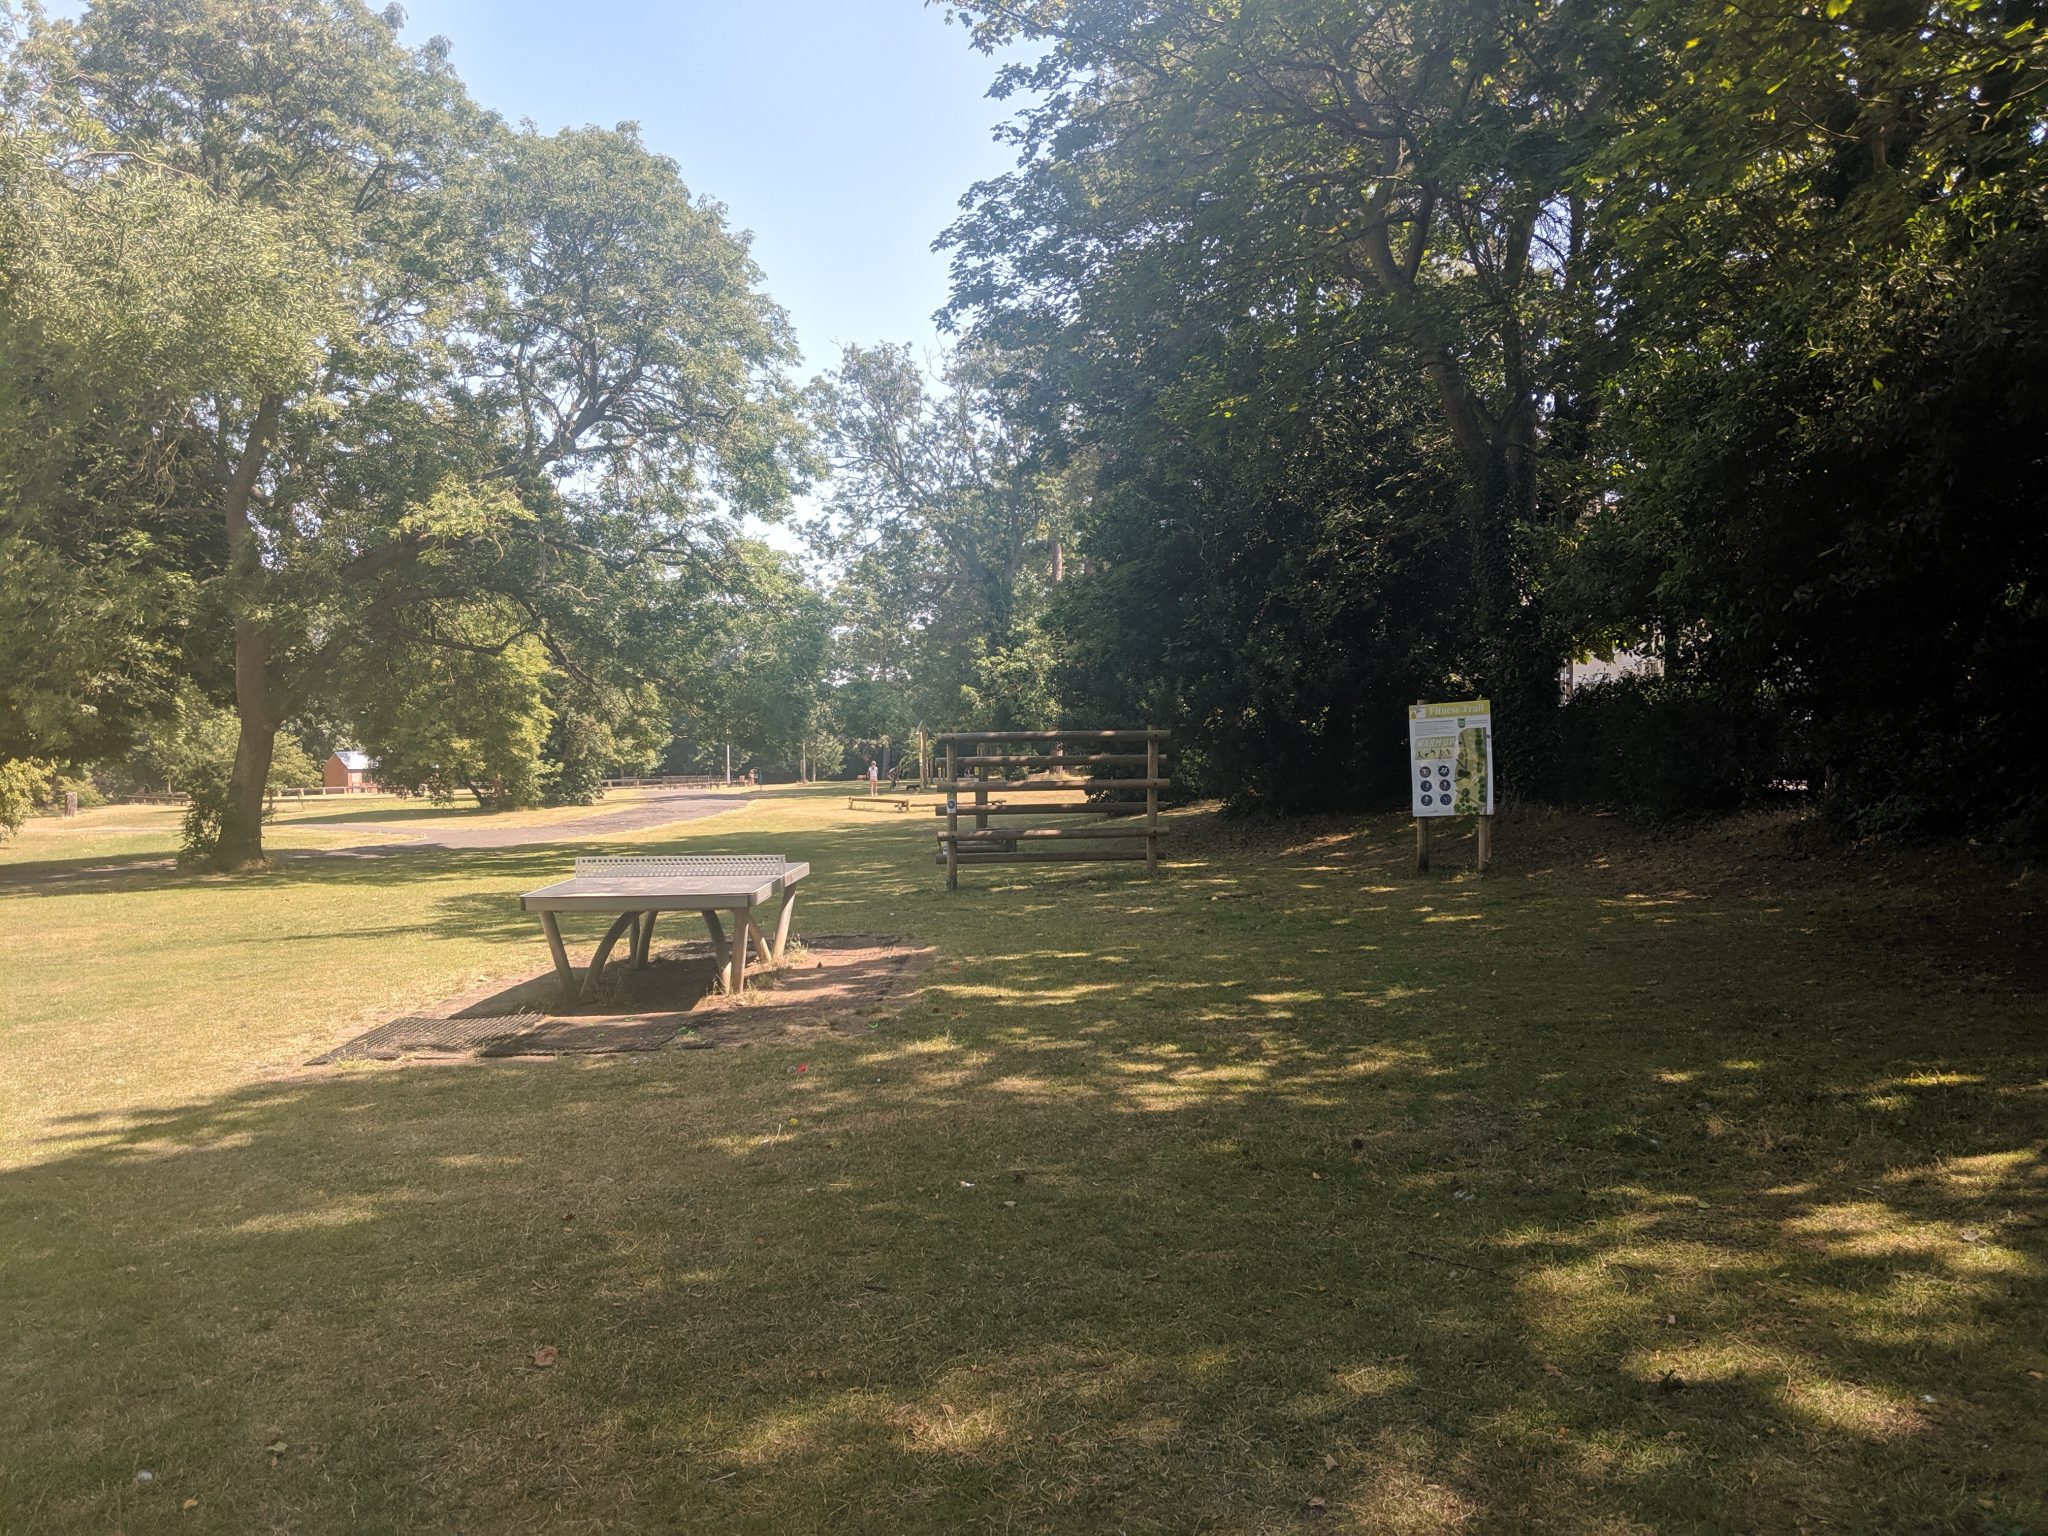 Activity area at Ellington Park